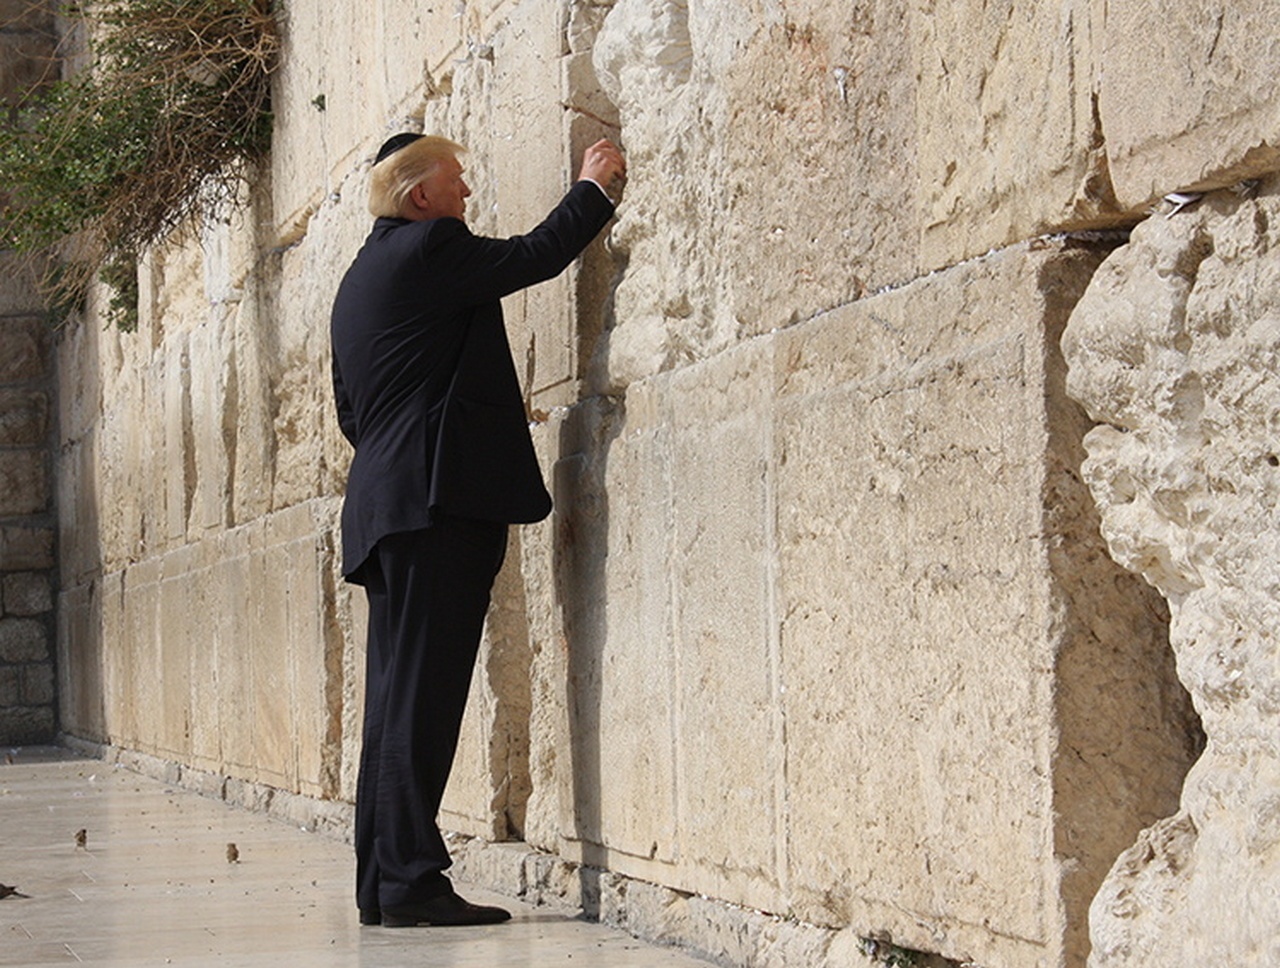 О чём Трамп просил Бога, останется между ними. А вот открытие посольства США в Иерусалиме вызвало бурю протестов по всему миру.